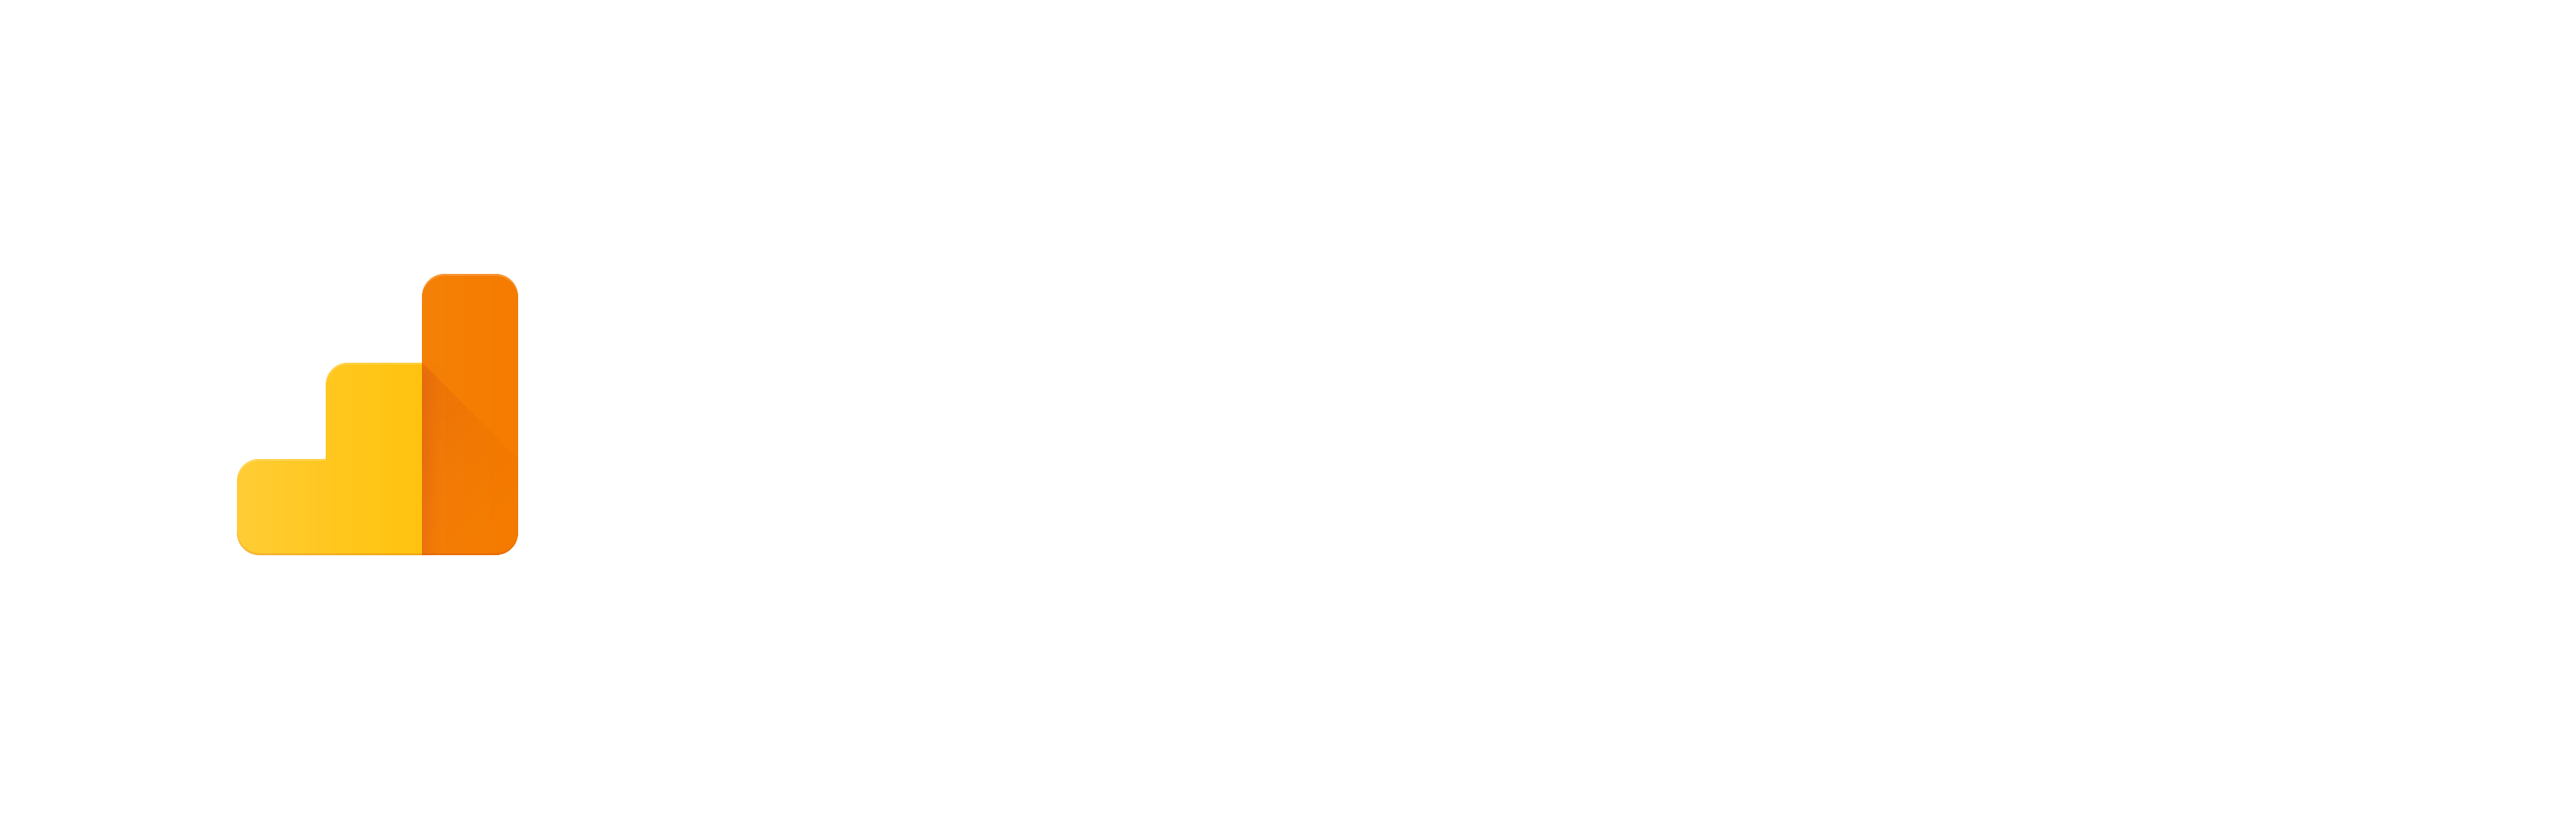 Google White Logo - Google Analytics Developer Branding Guidelines & Policies. Google